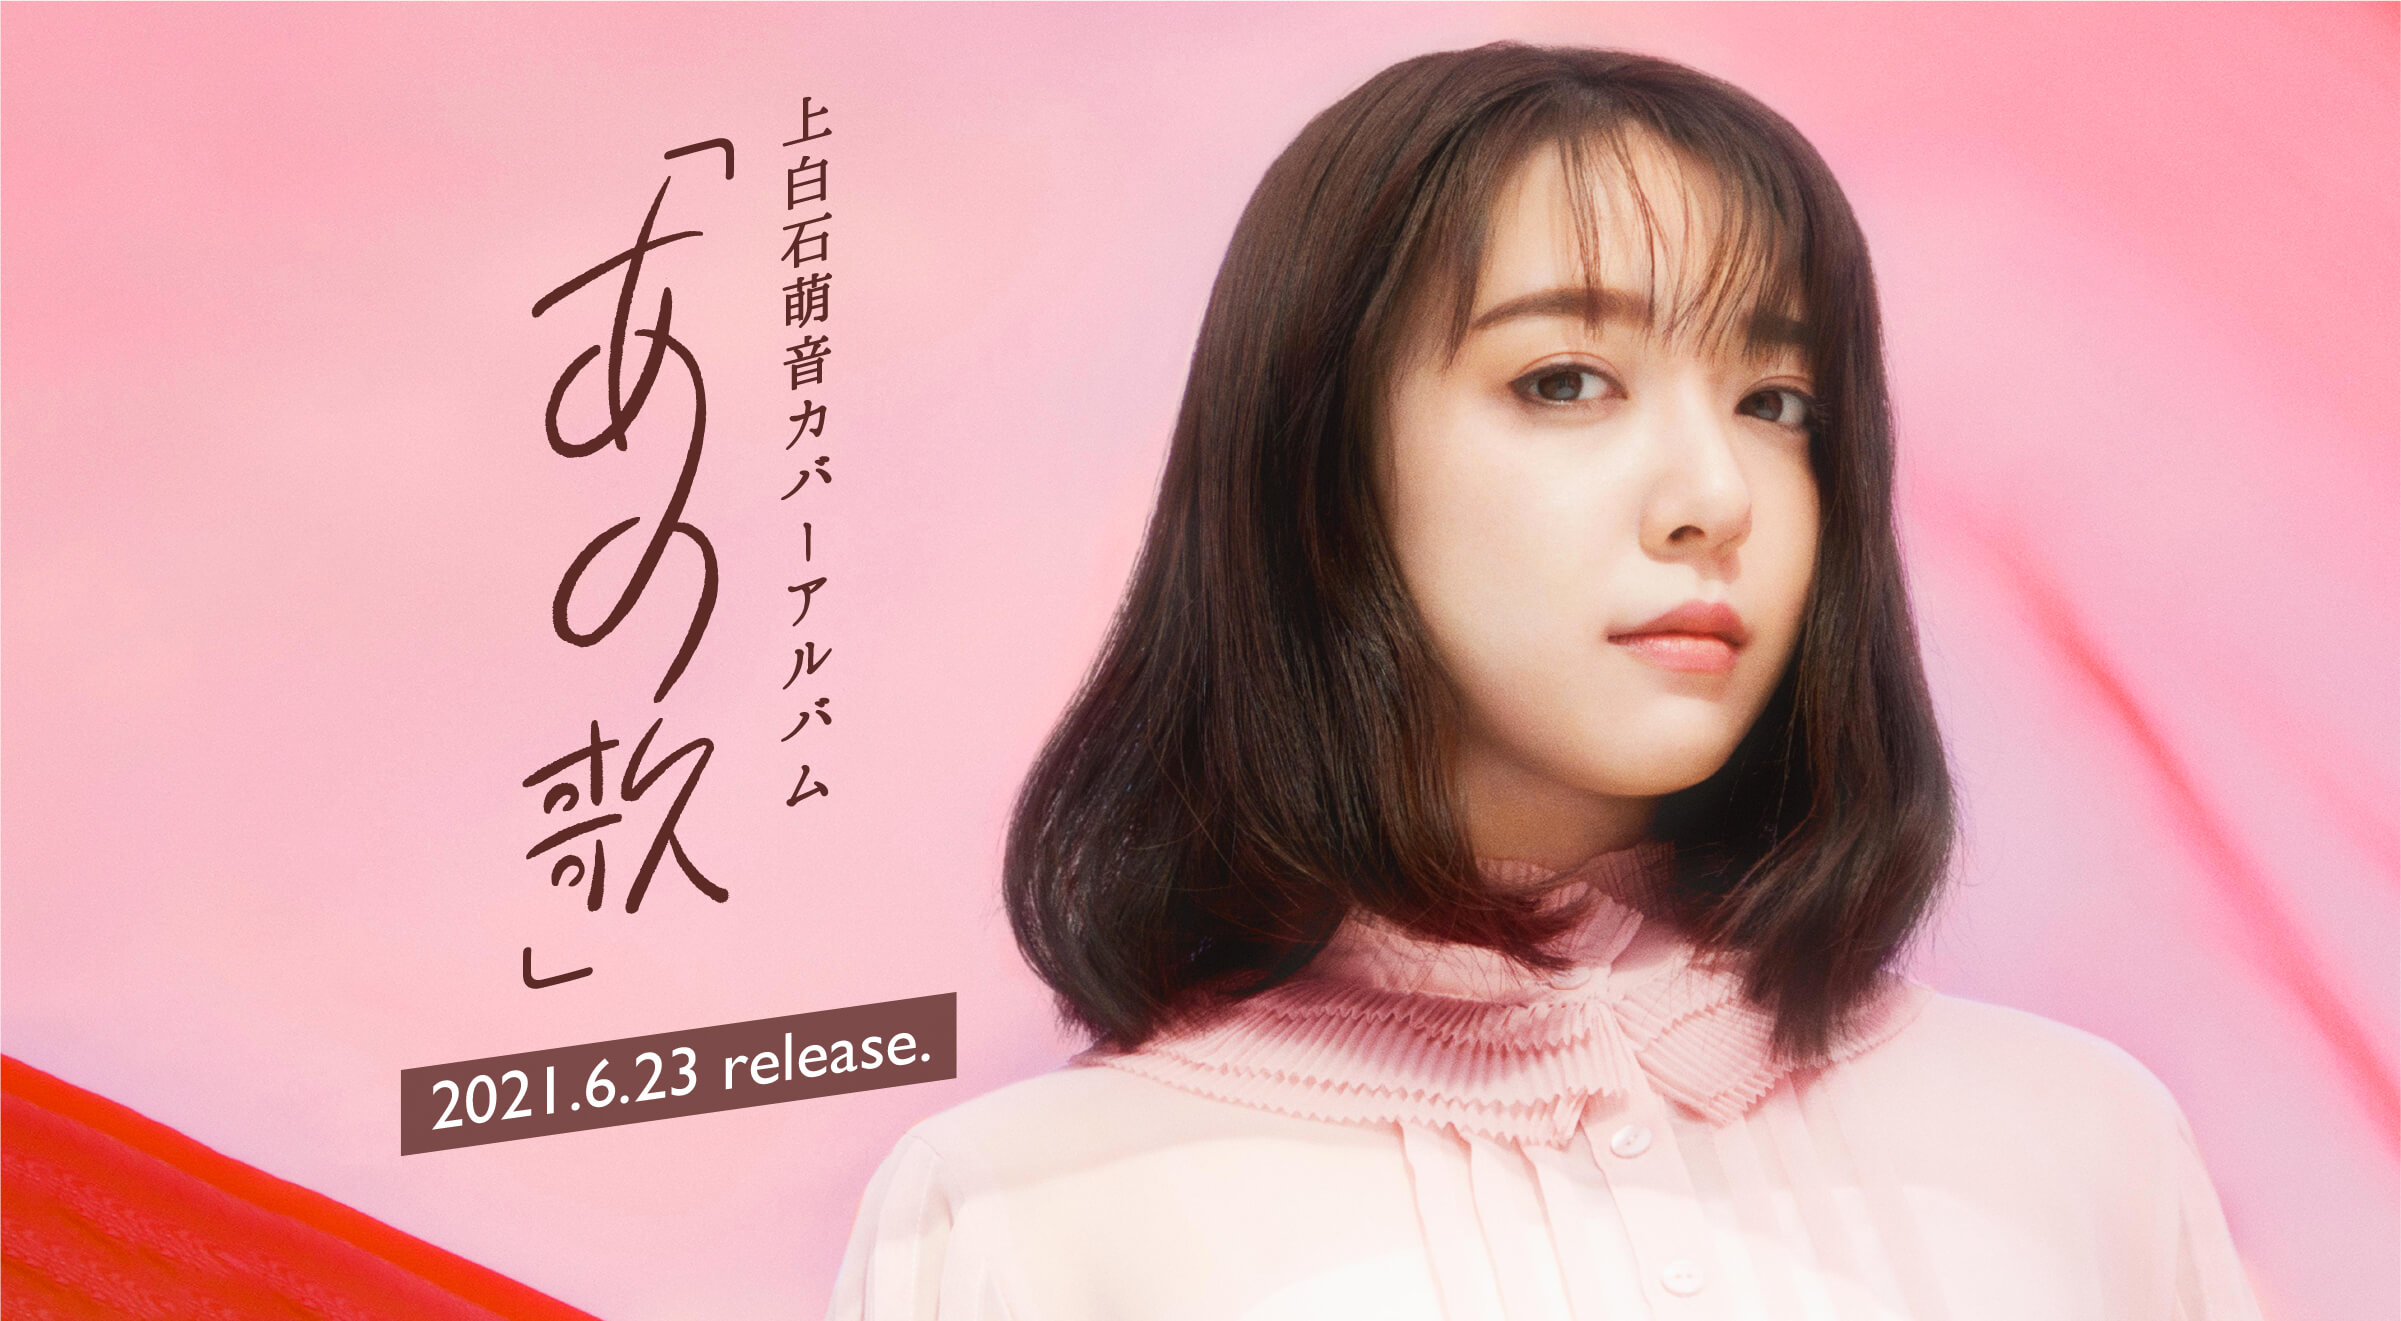 上白石萌音オアバーアルバム 「あの歌」 2021.6.23 release.